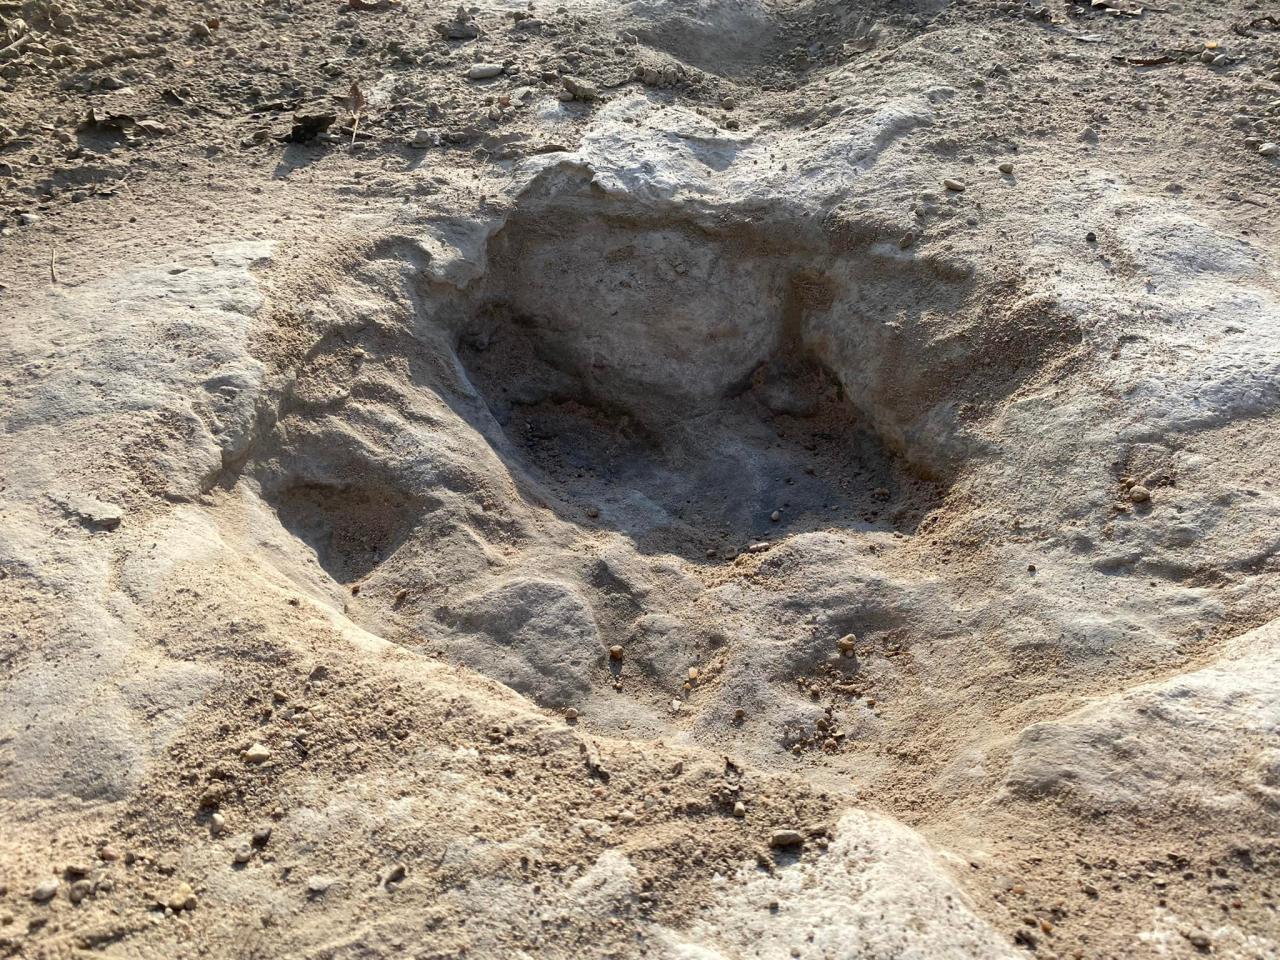 La mayoría de las huellas encontradas y descubiertas en diferentes partes del río pertenecen al acrocanthosaurus.